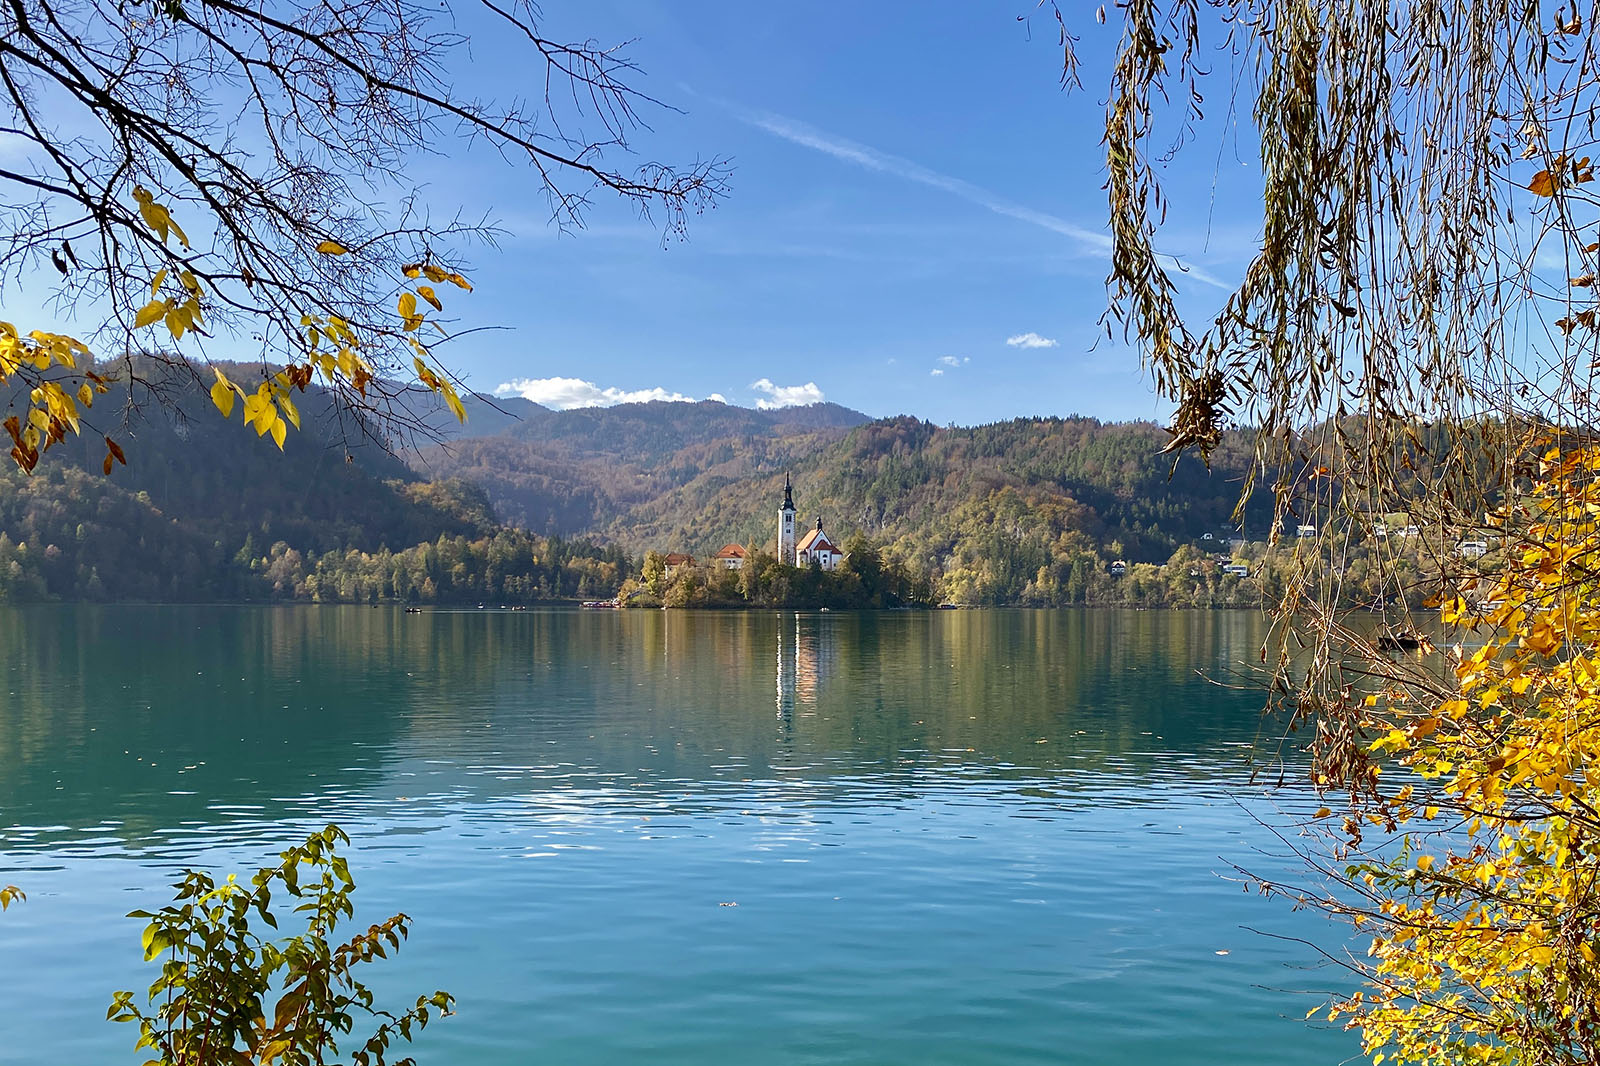 Lake Bled Island and church